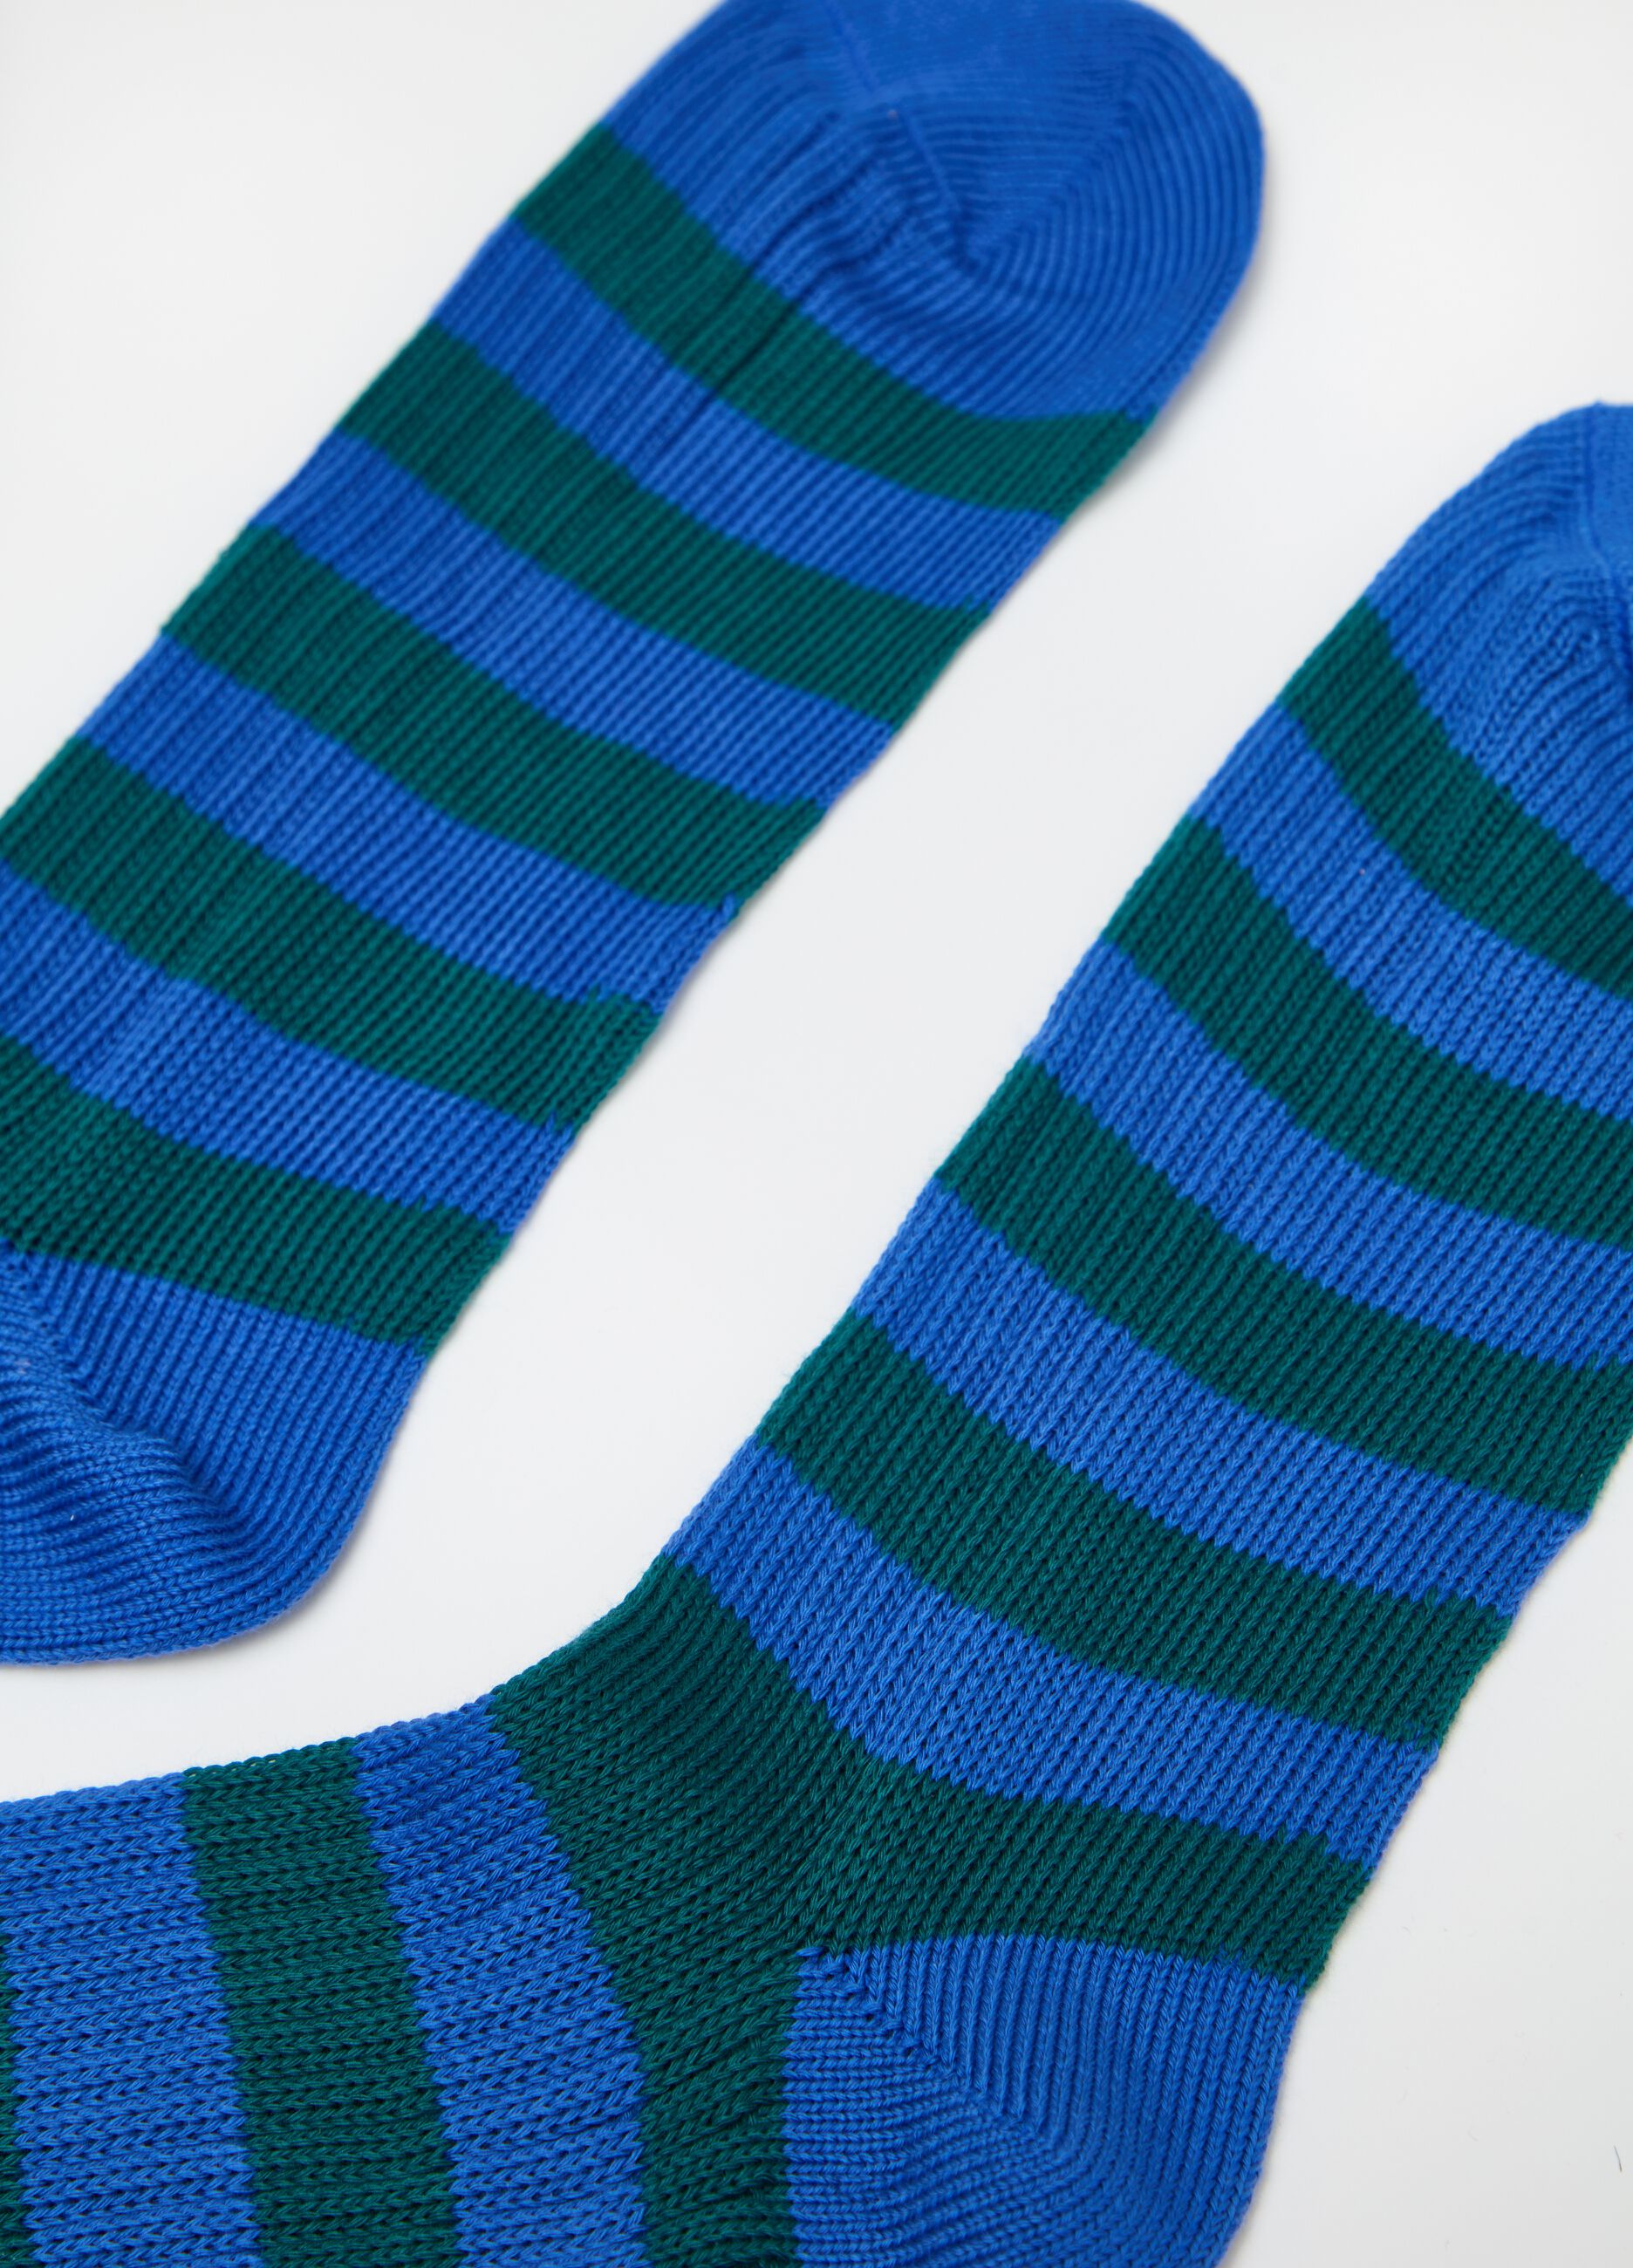 Long socks in striped cotton